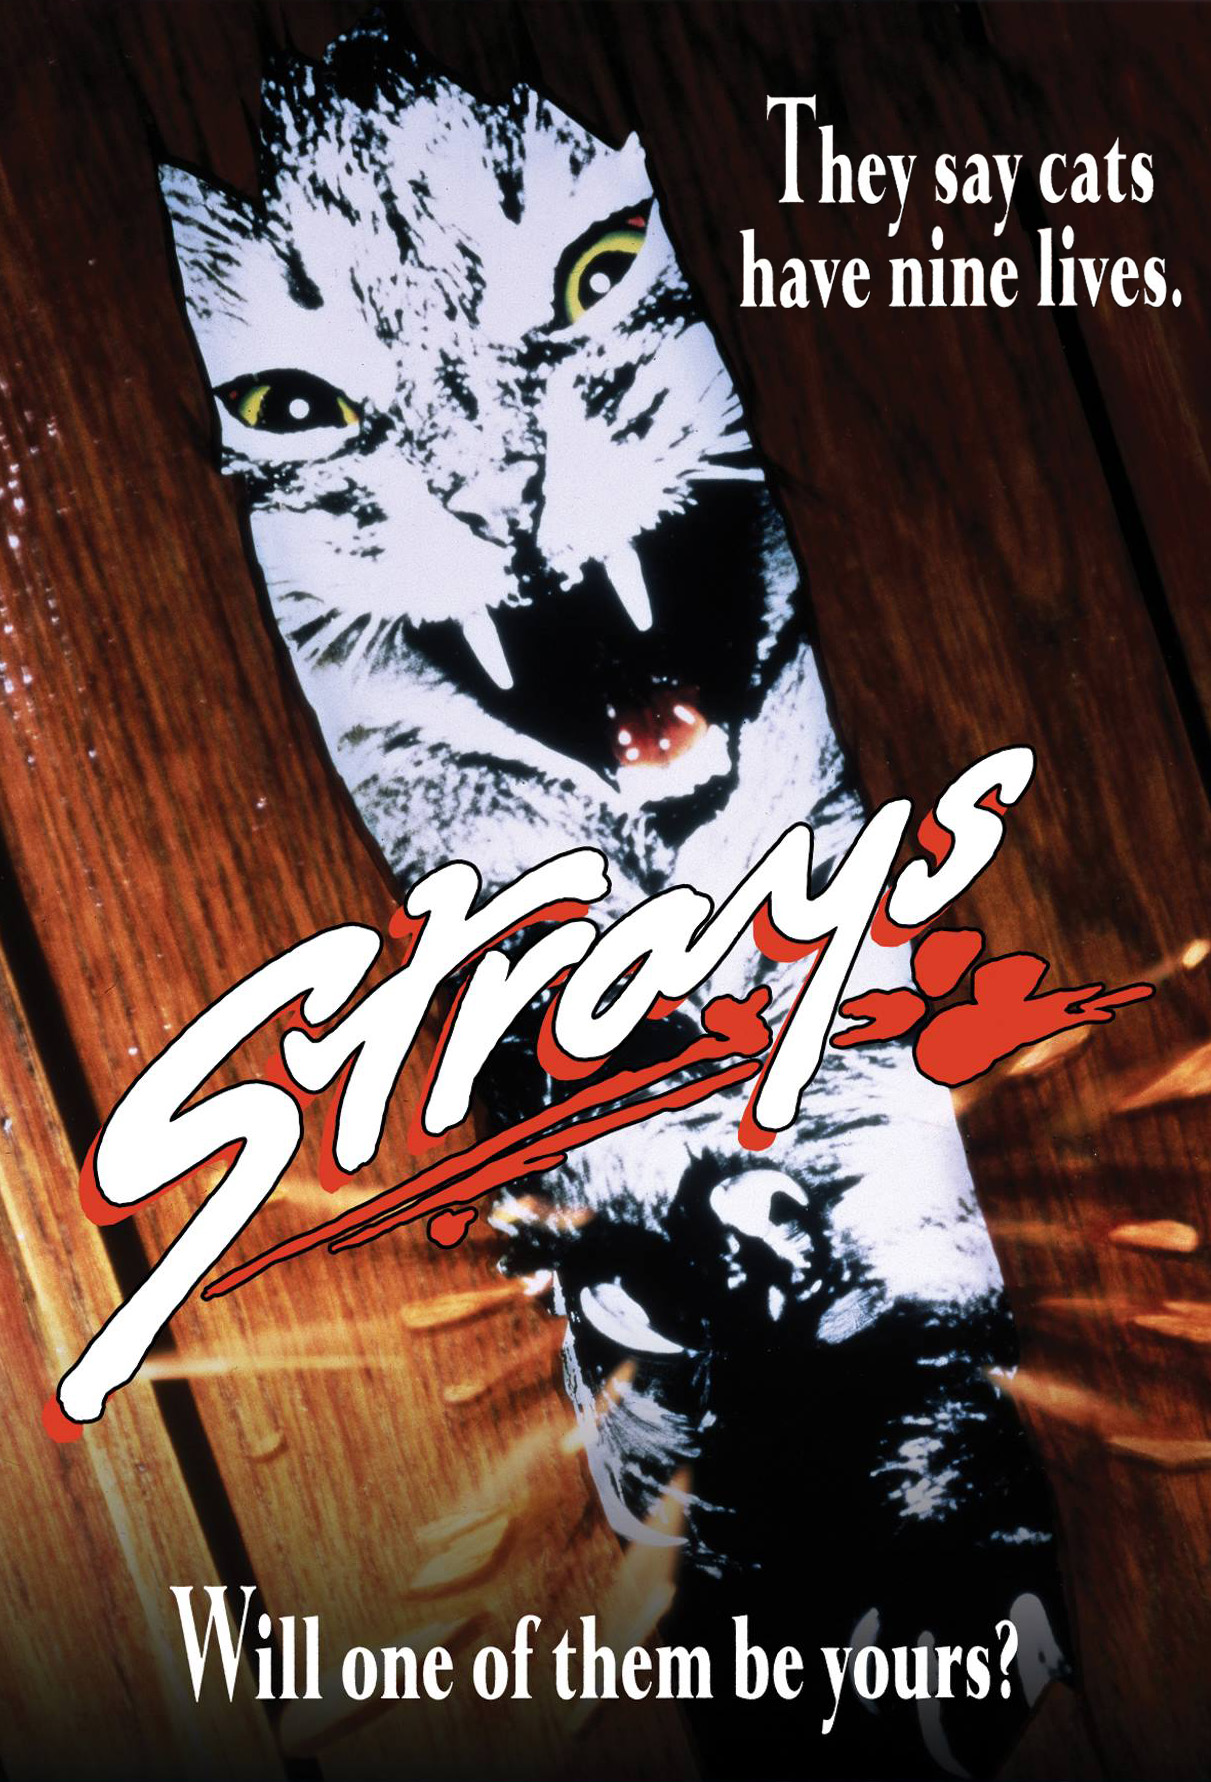 Strays (TV Movie 1991)